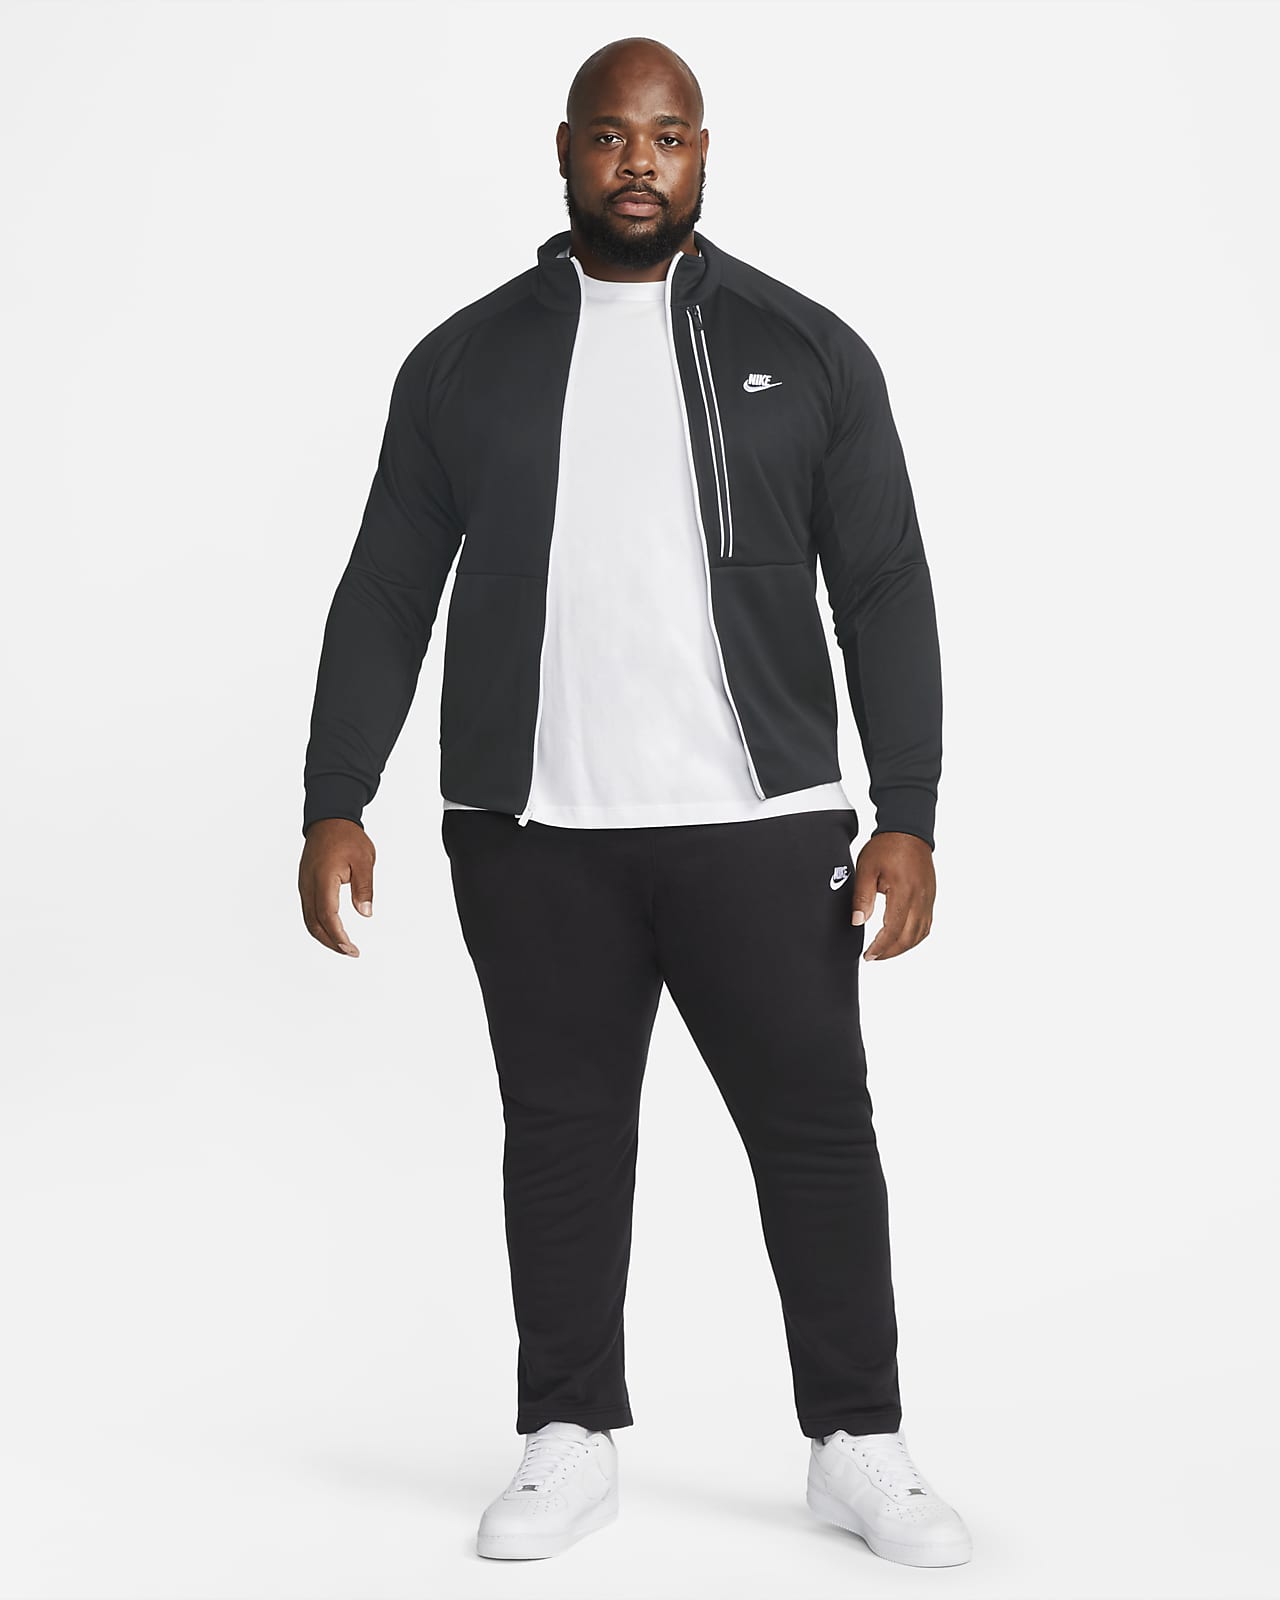 Nike Sportswear Men's N98 Jacket. Nike.com